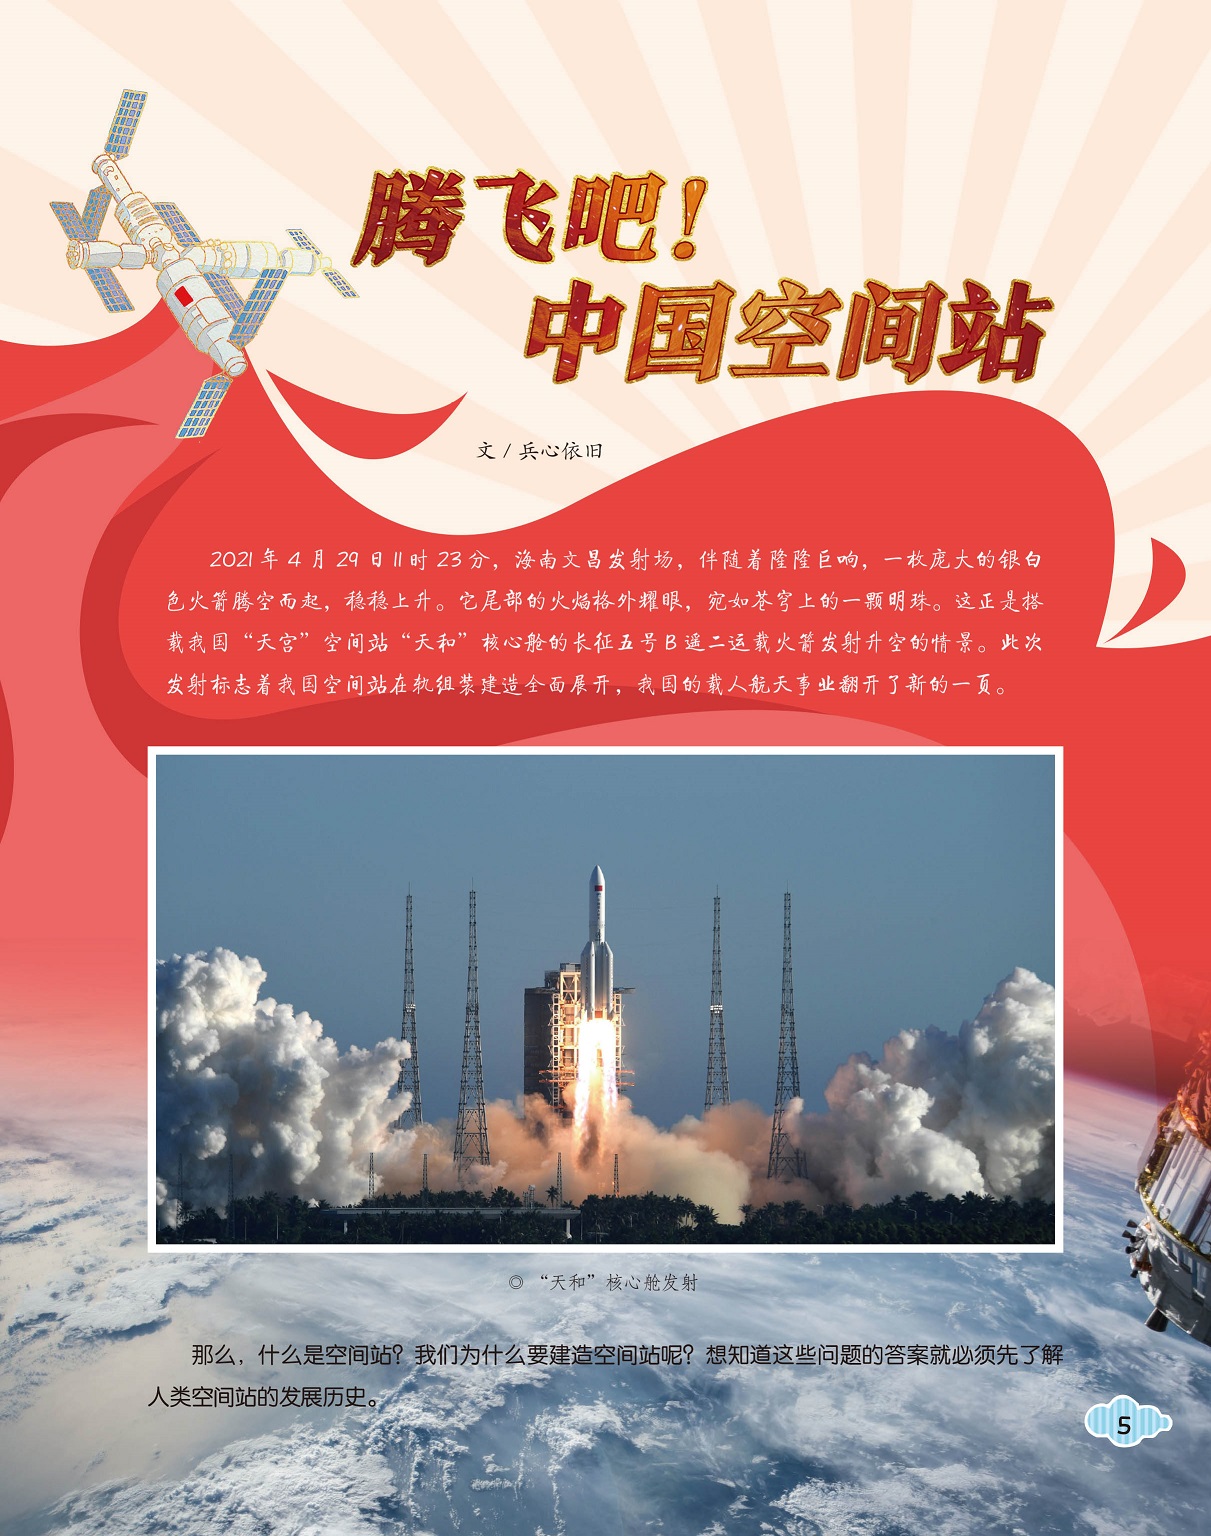 中国空间站组装建造全面展开,载人航天事业发展